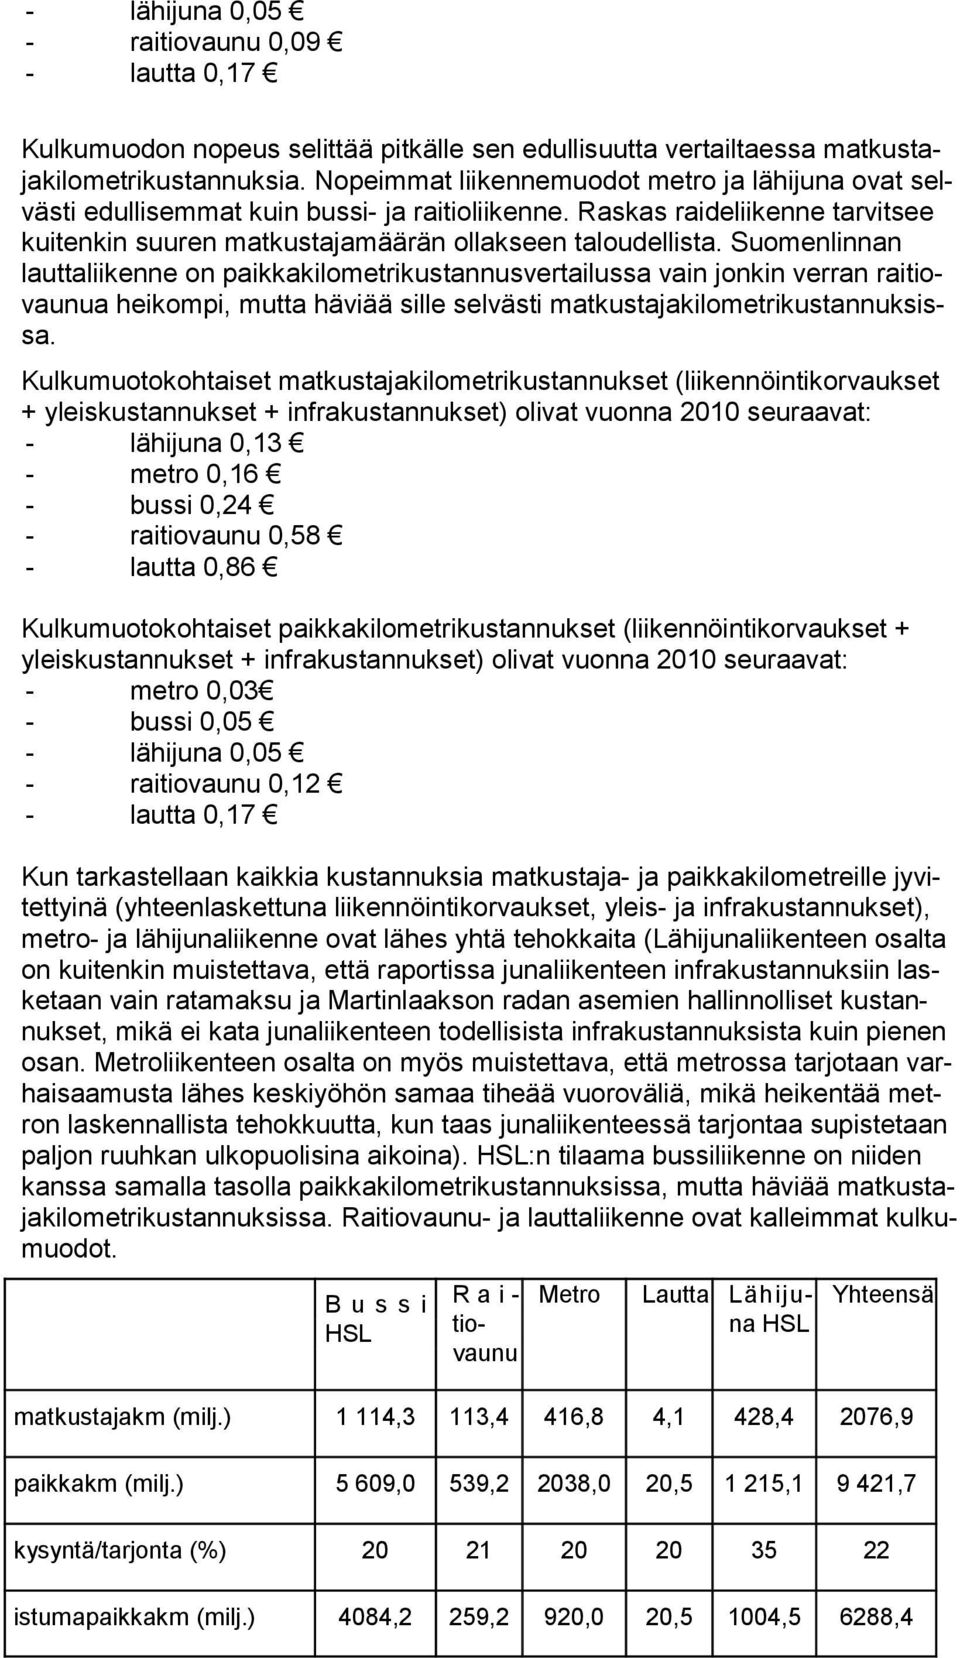 Suomenlinnan lauttaliikenne on paikkakilometrikustannusvertailussa vain jonkin verran raitiovaunua heikompi, mutta häviää sille selvästi matkustajakilometrikustannuksissa.